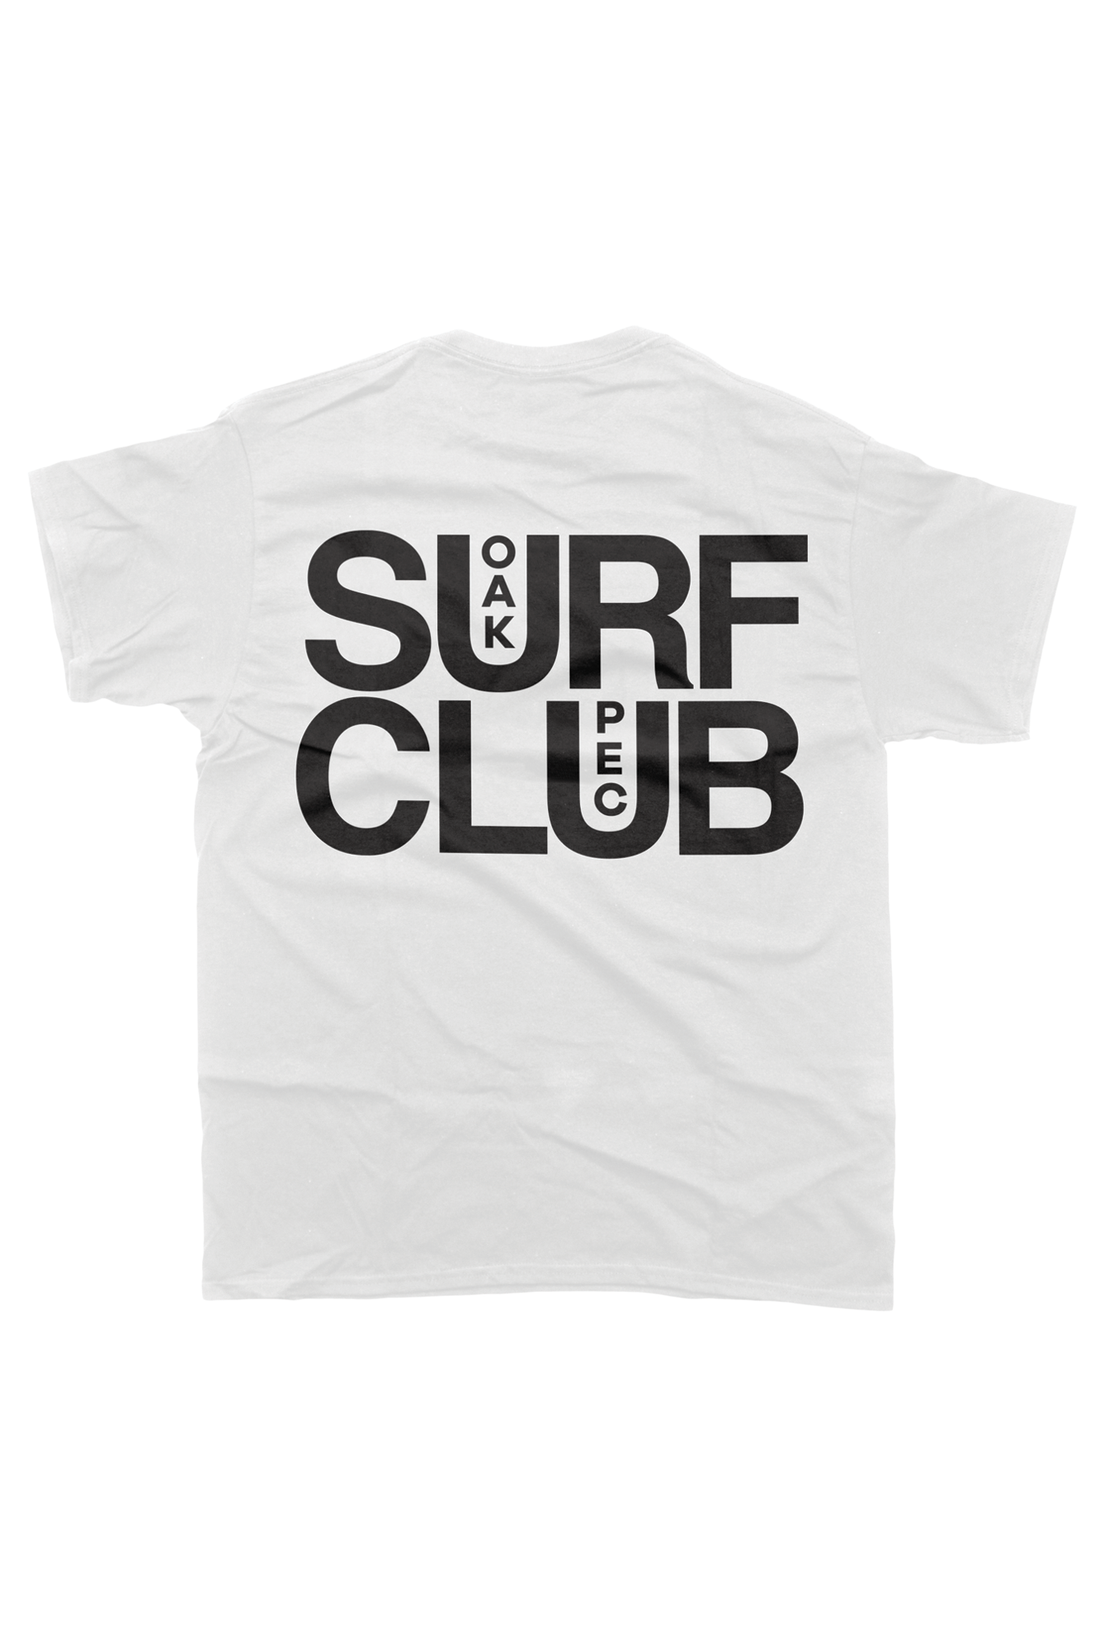 OAK SURF CLUB UNISEX PEC TEE - WHITE TSHIRT OAK SURF CLUB   